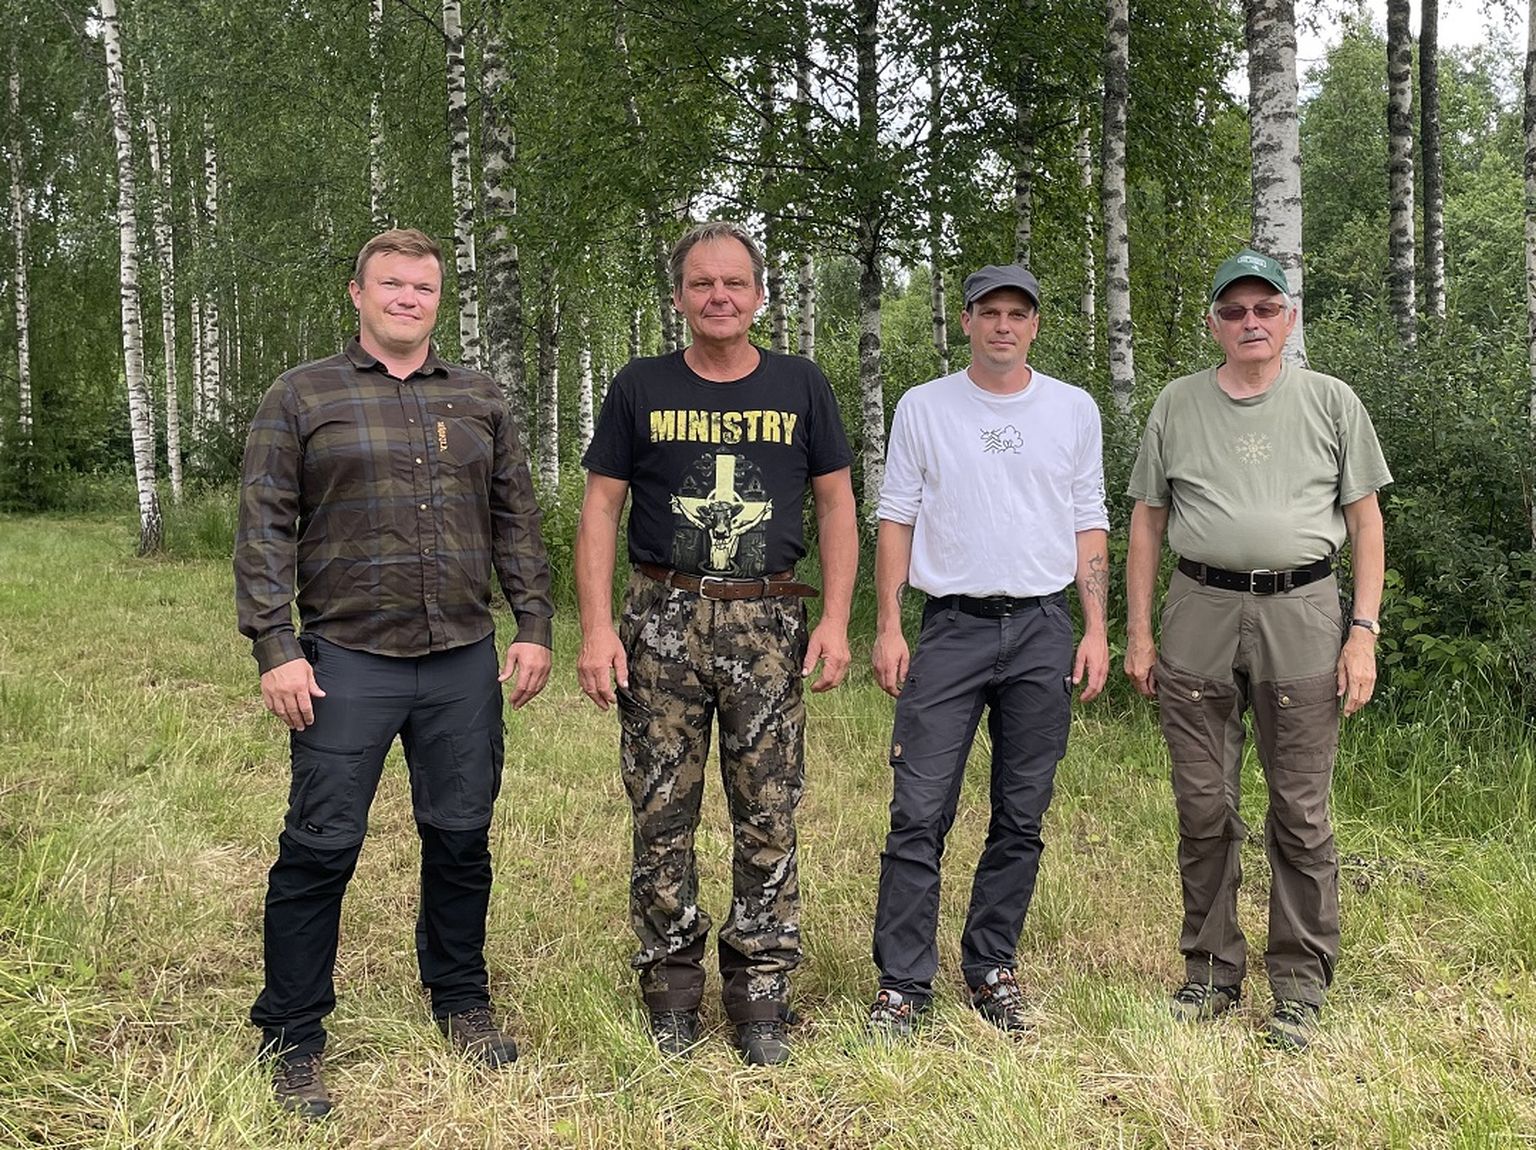 Fotol komisjoni liikmed Meelis Matkamäe, Gunnar Lepasaar, Dimitri Randoja ja Veljo Kütt.